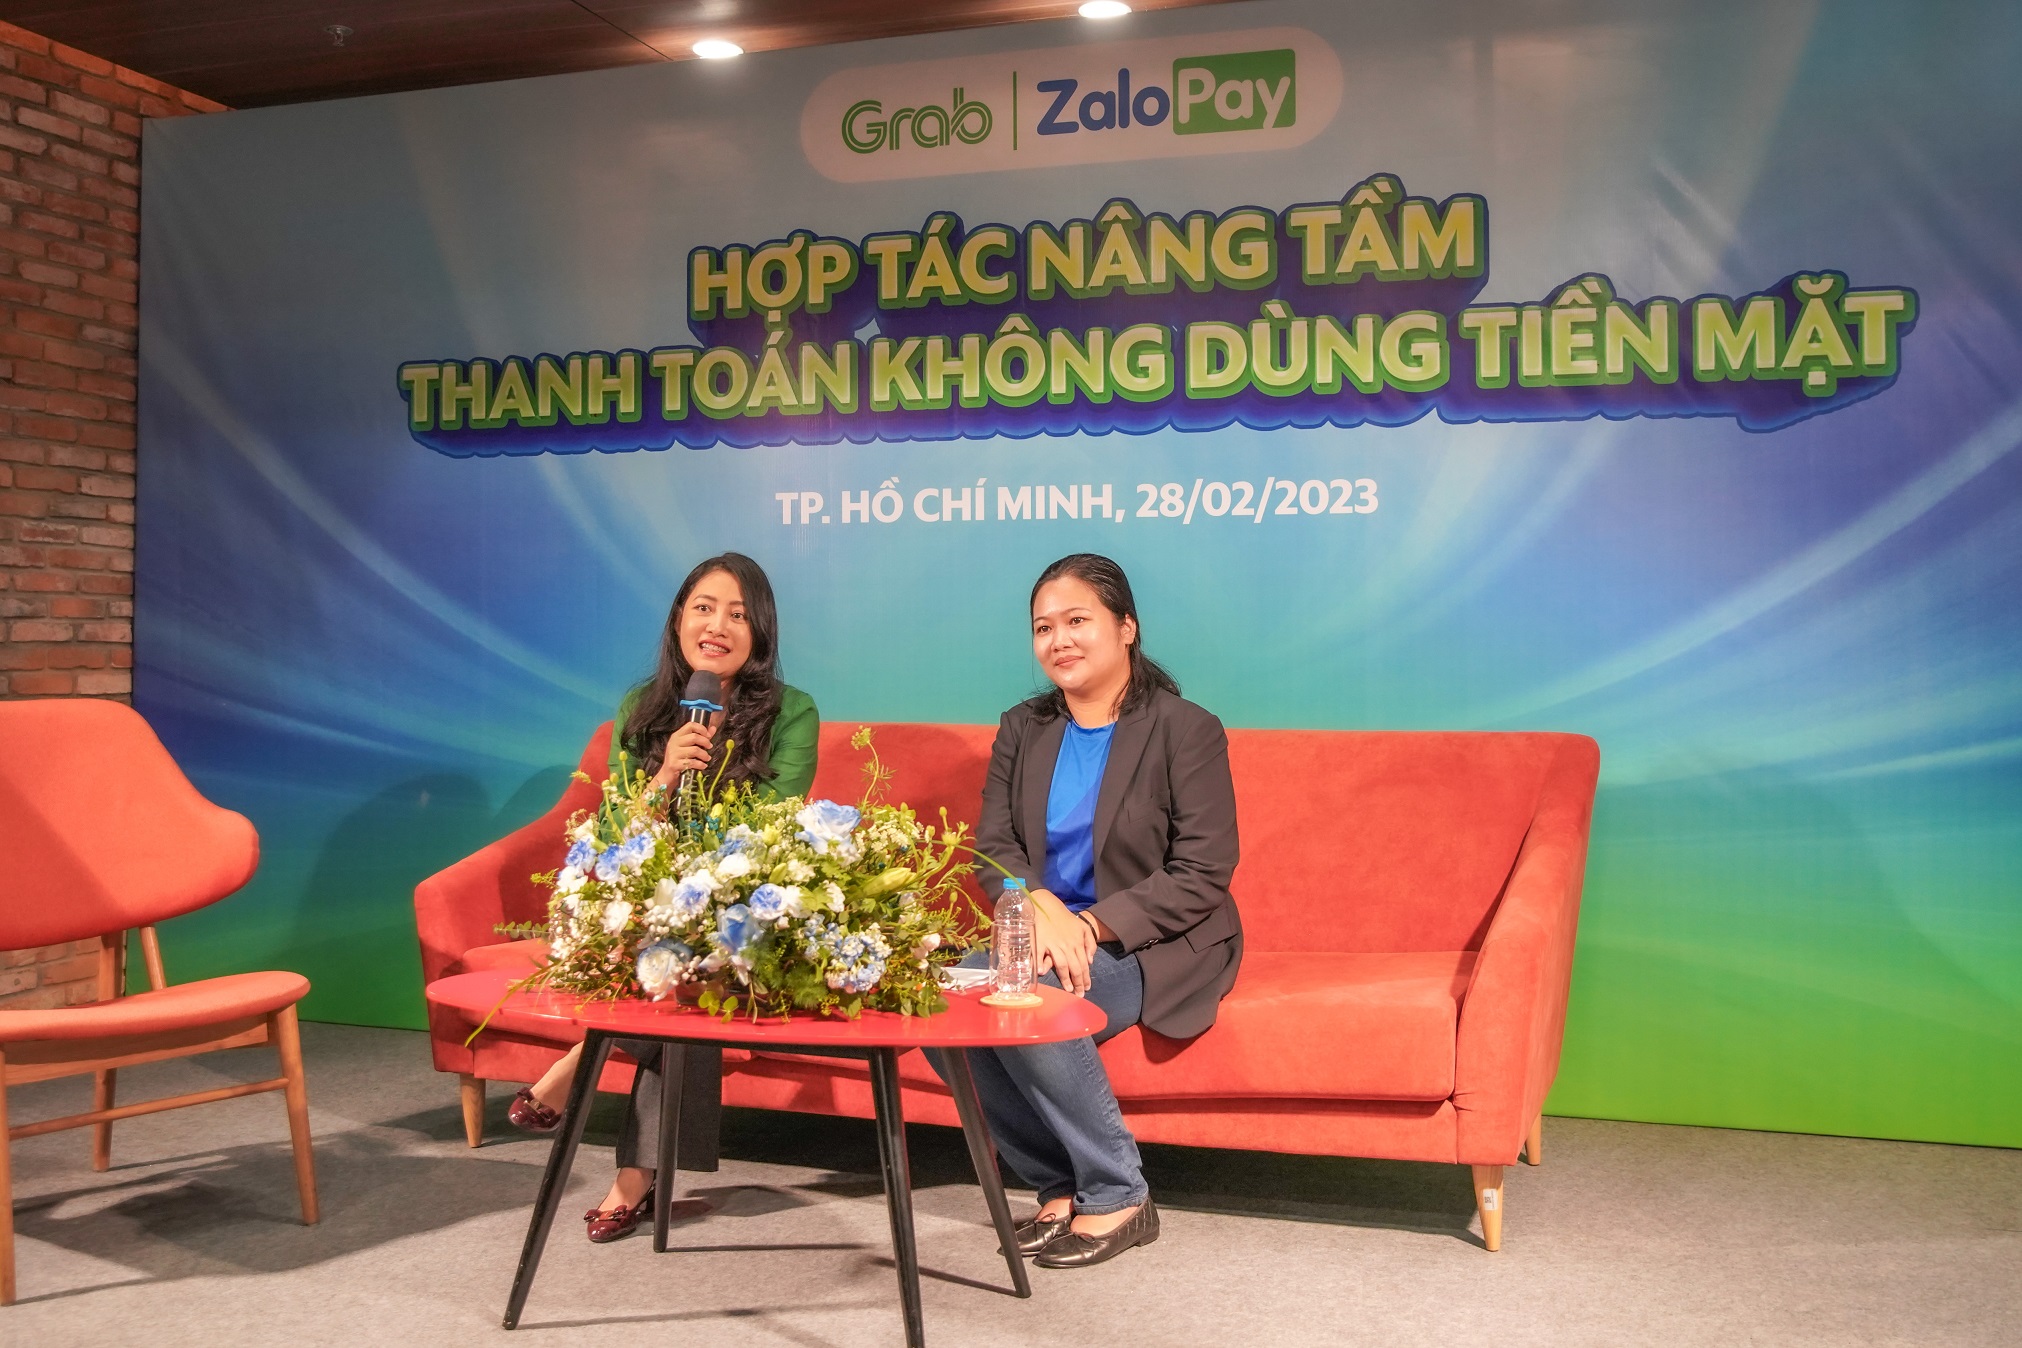 Hợp tác cùng Grab Việt Nam, ZaloPay muốn giúp bớt “bom” hàng và mở rộng thị trường thanh toán - Anh 2 7